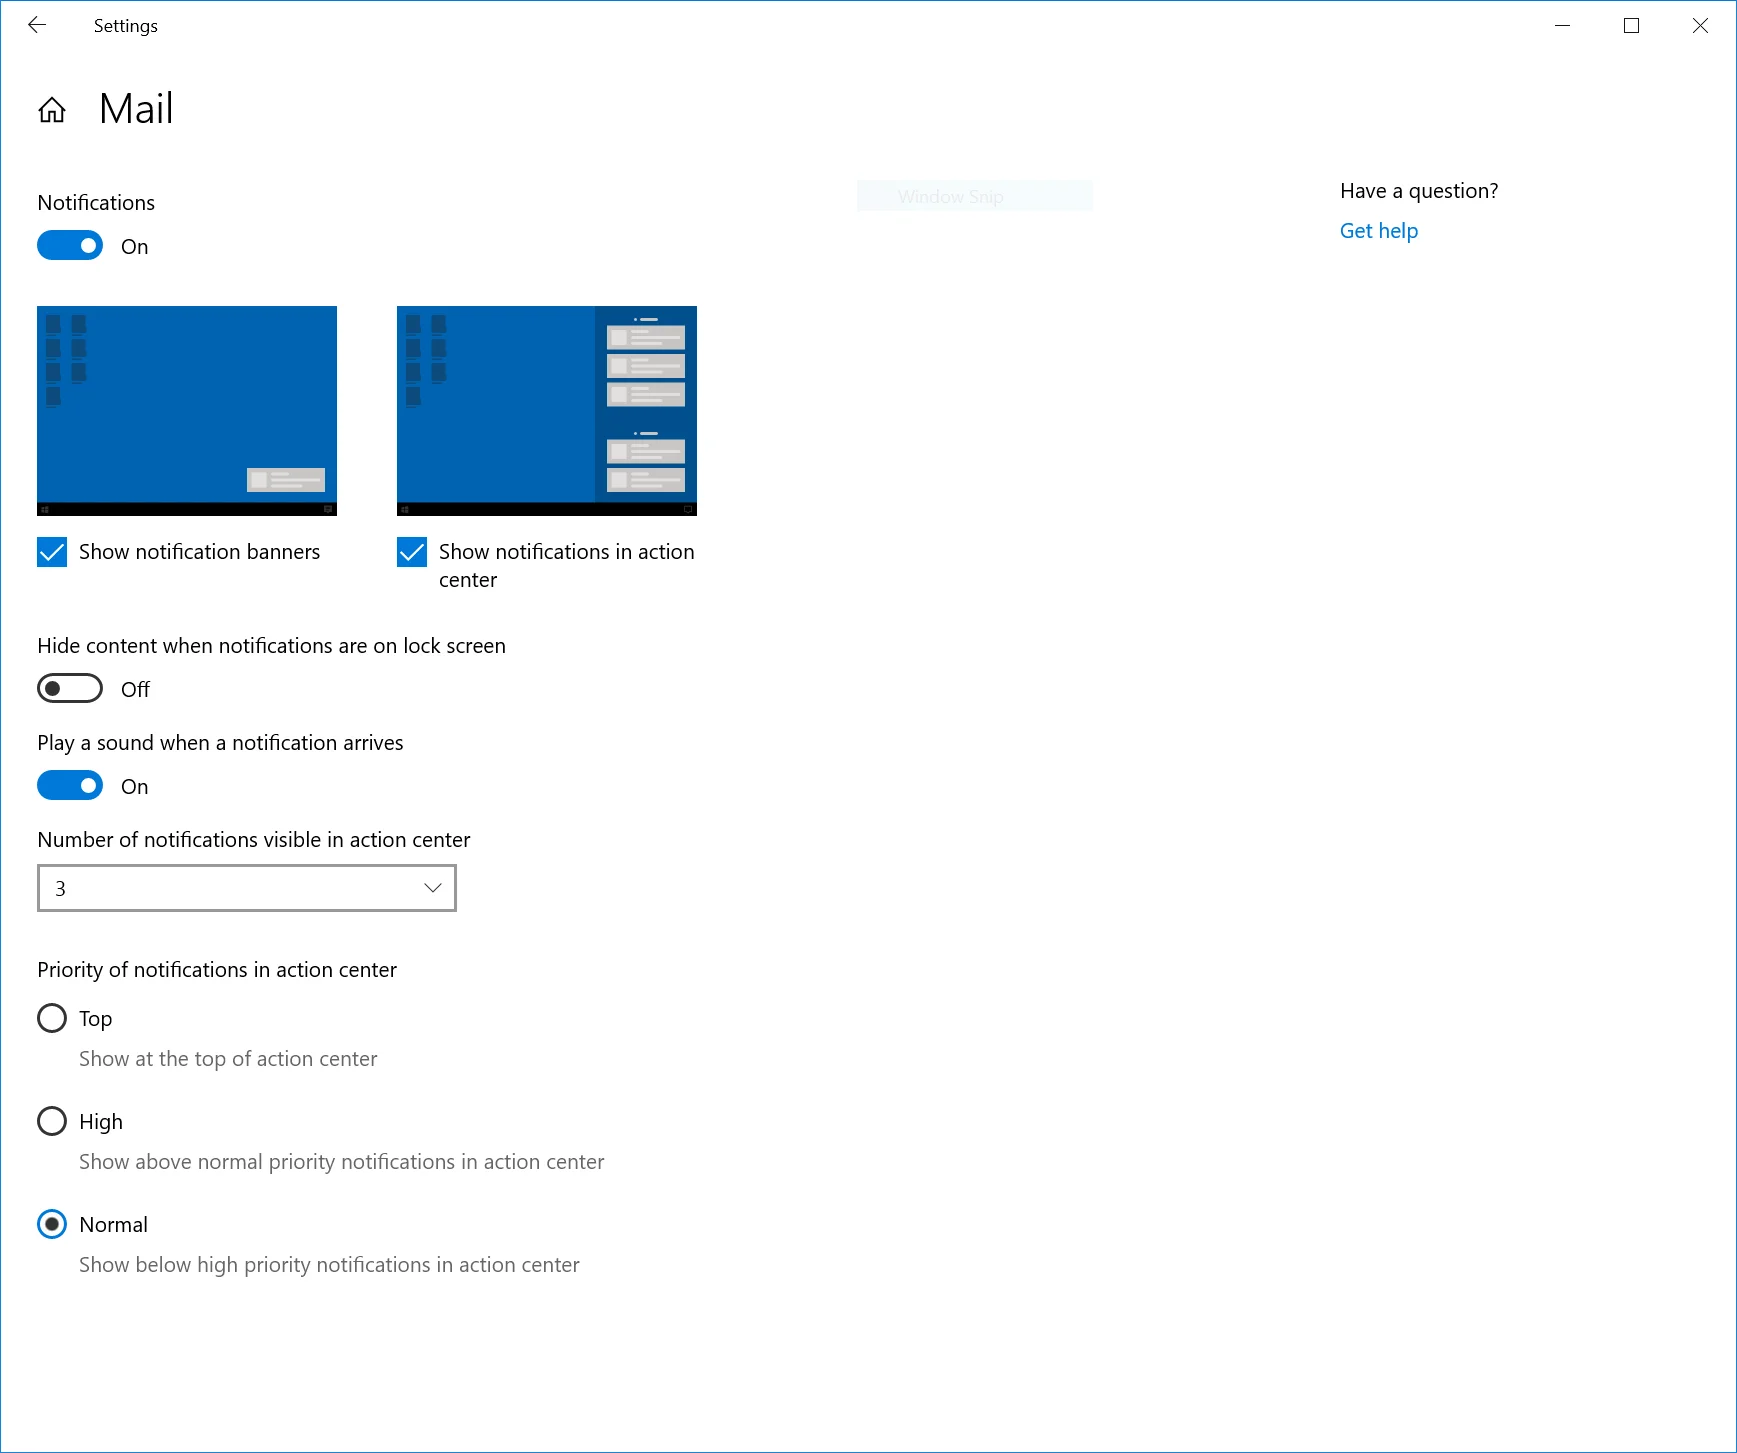 Ayudas para la configuración de notificaciones en Windows 10 19H2